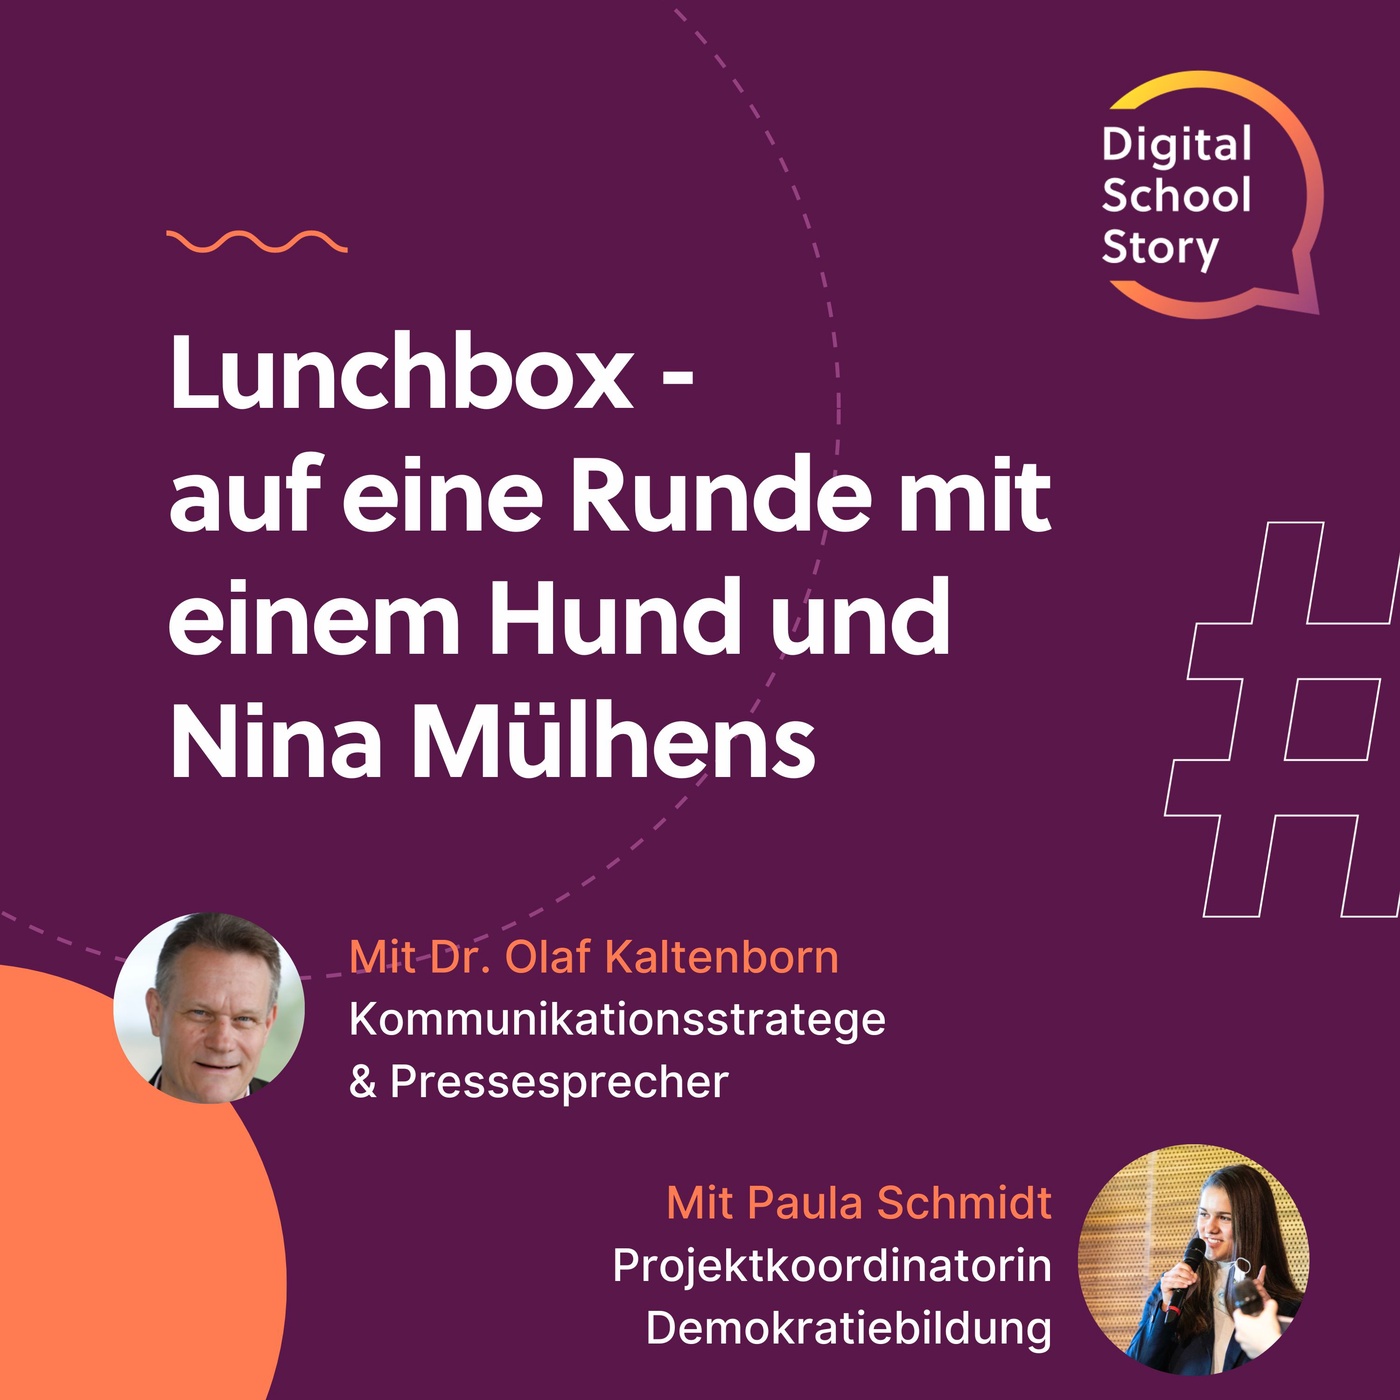 #31 Paula Schmidt und Dr. Olaf Kaltenborn bei der #lunchbox